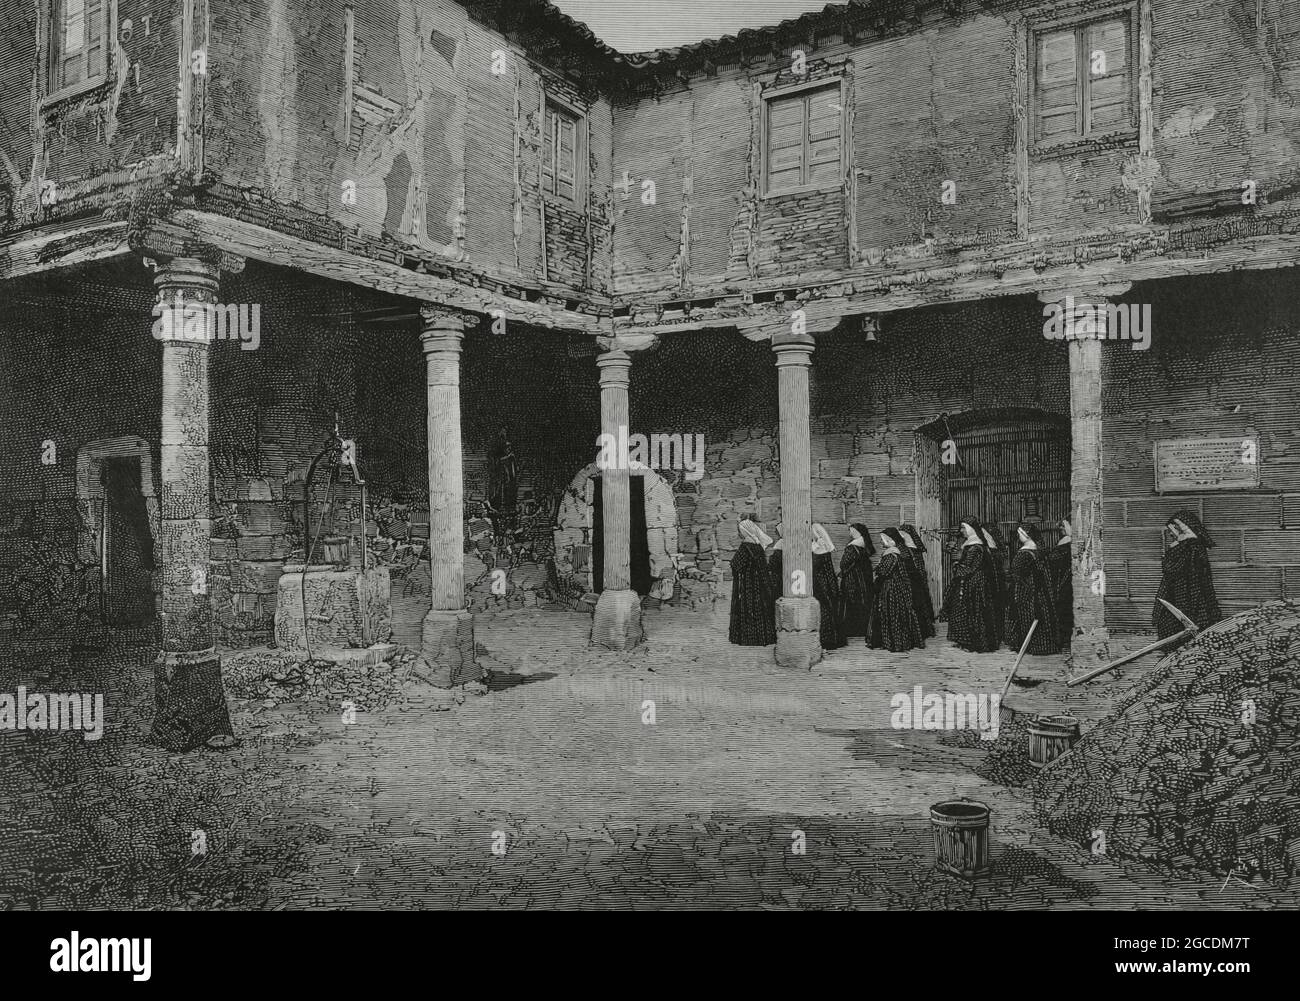 Spagna, Salamanca. Casa di Santa Teresa. Patio. Incisione di Rico. La Ilustración Española y americana, 1882. Foto Stock